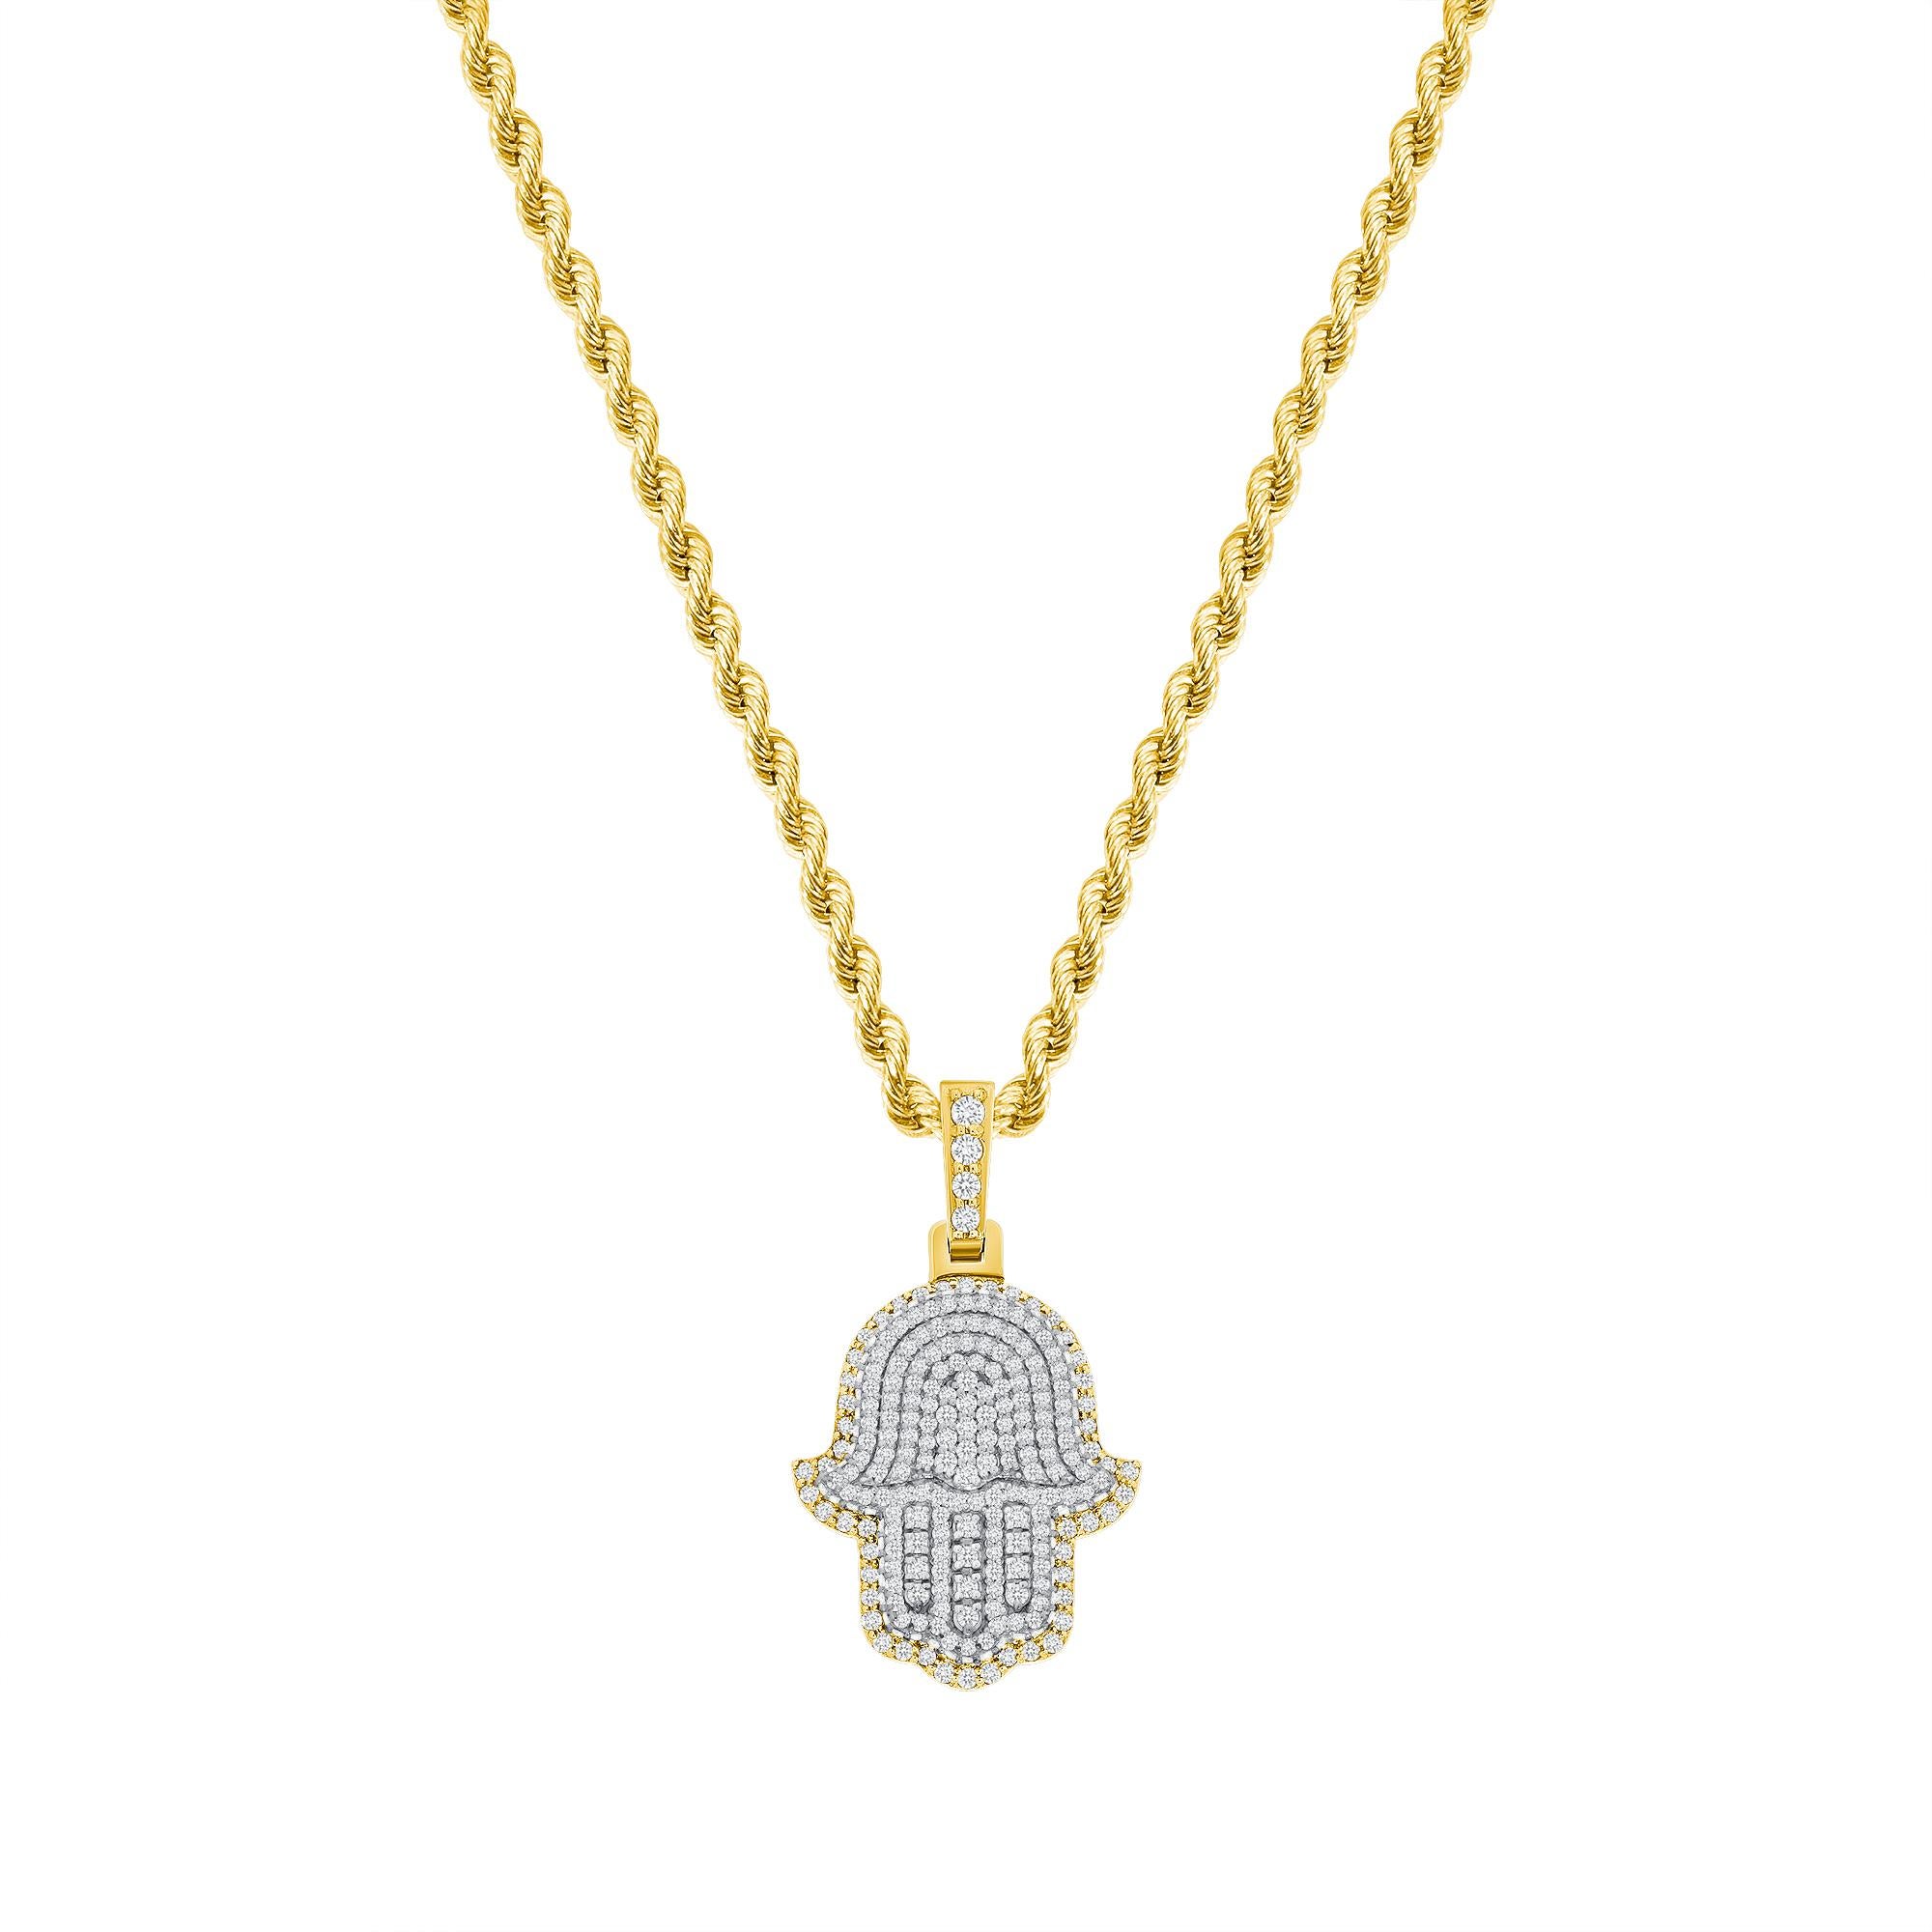 Diese Hamsa-Diamant-Halskette bietet sowohl einen spirituellen als auch einen modischen Trend-Look. 

Metall: 14k Gold
Diamant-Schliff: Rund
Diamant Karat gesamt: 2 Karat
Diamant Reinheit: VS
Farbe des Diamanten: F-G
Länge der Halskette: 24